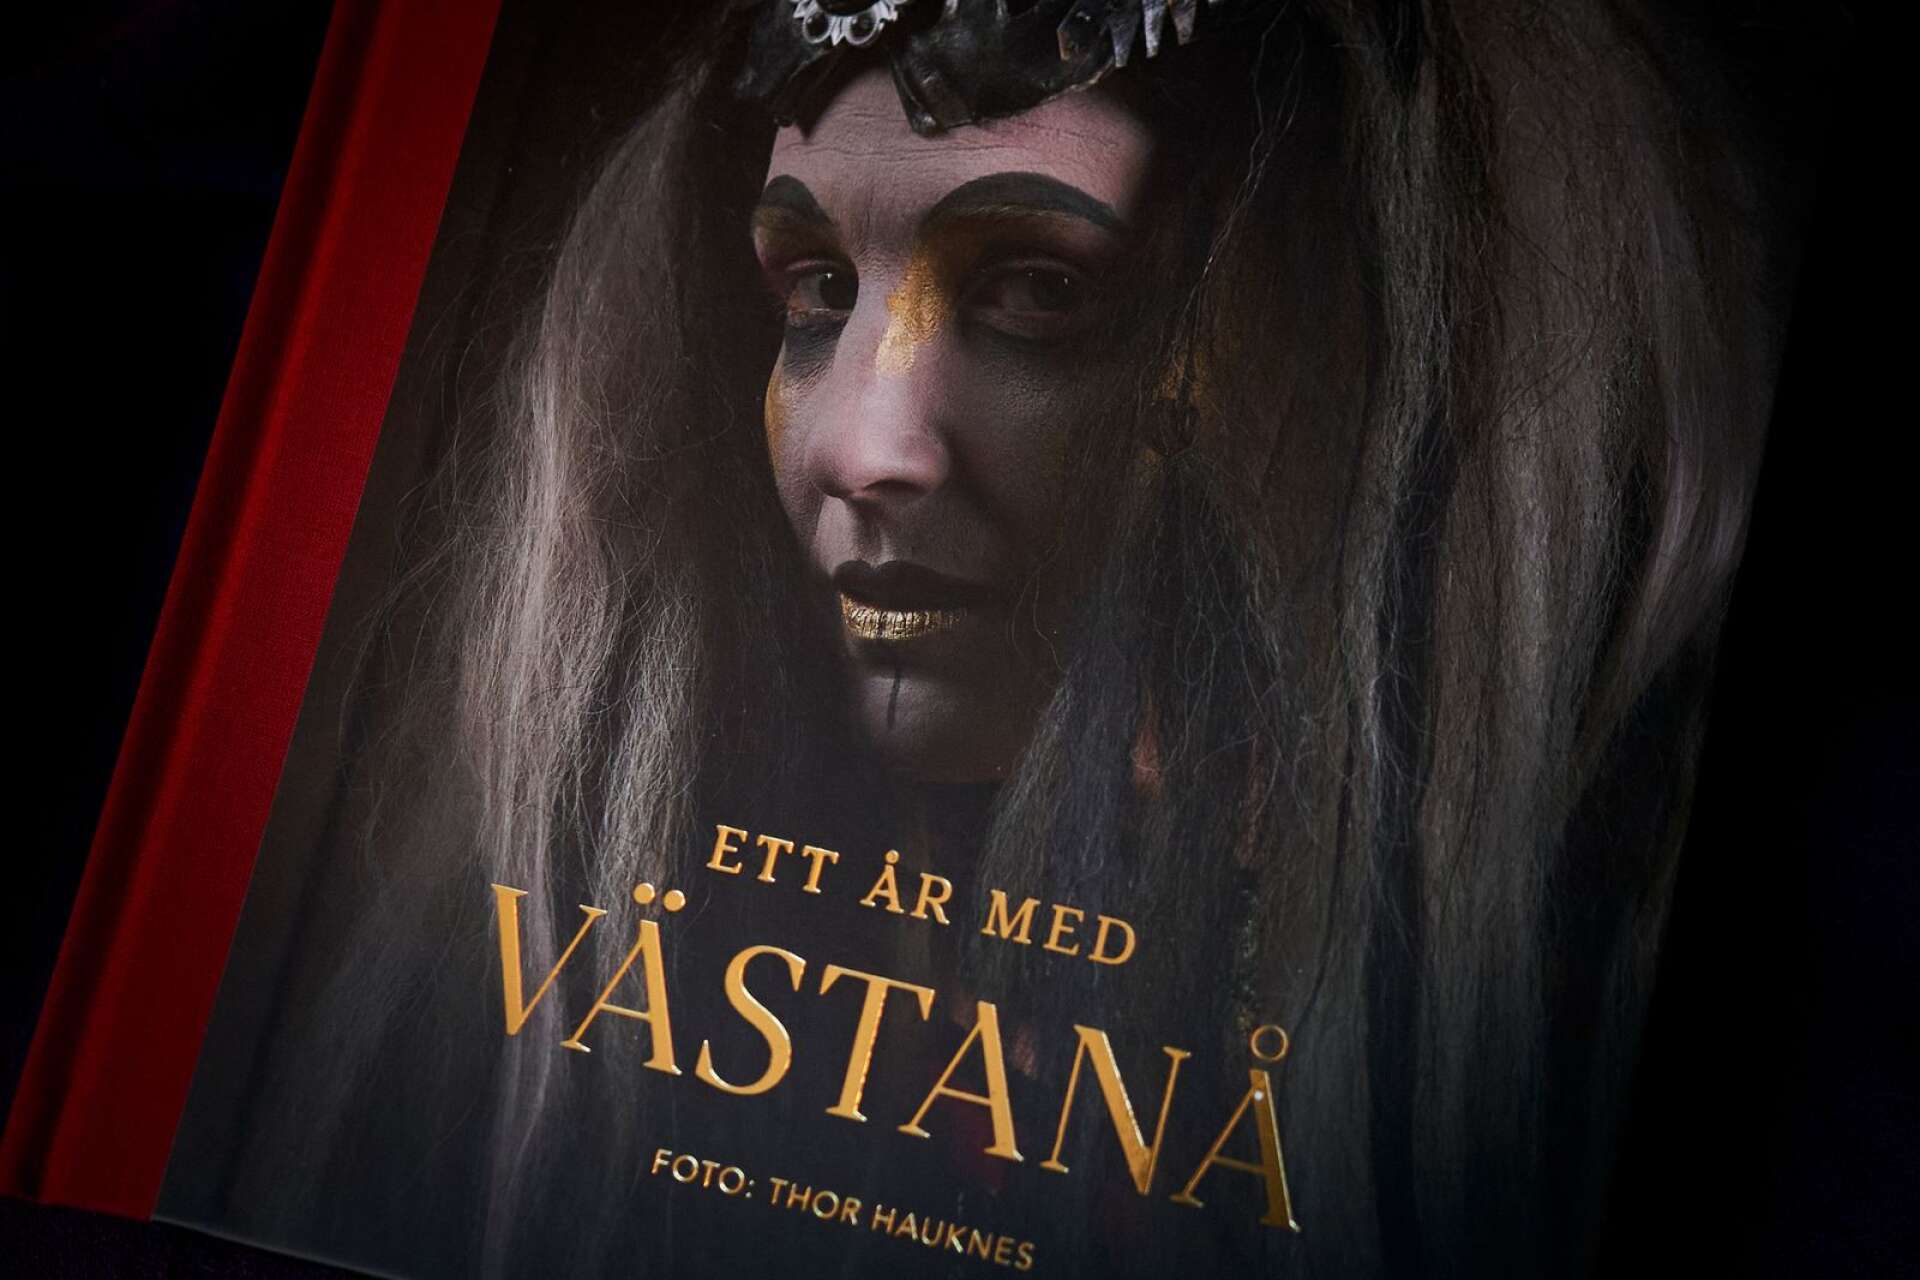  Bokens omslag har tryck i guld och pryds av ett porträtt ur Eddan.